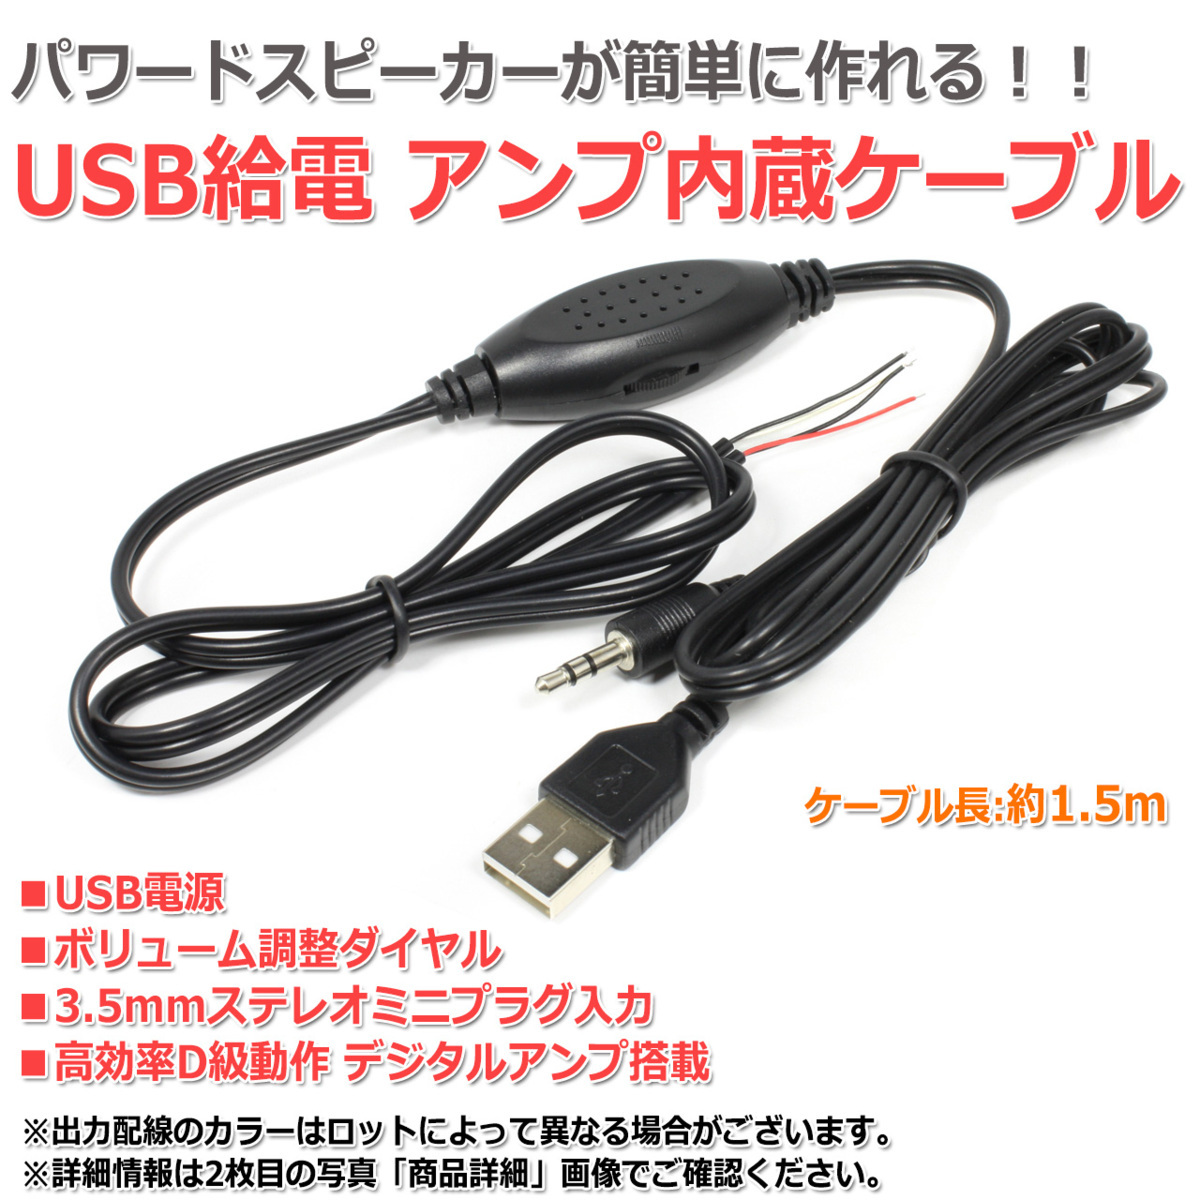 USB給電 デジタルアンプ内蔵オーディオケーブル[1.5m] 3.5mmステレオミニプラグ入力 ボリューム調整付きの画像1